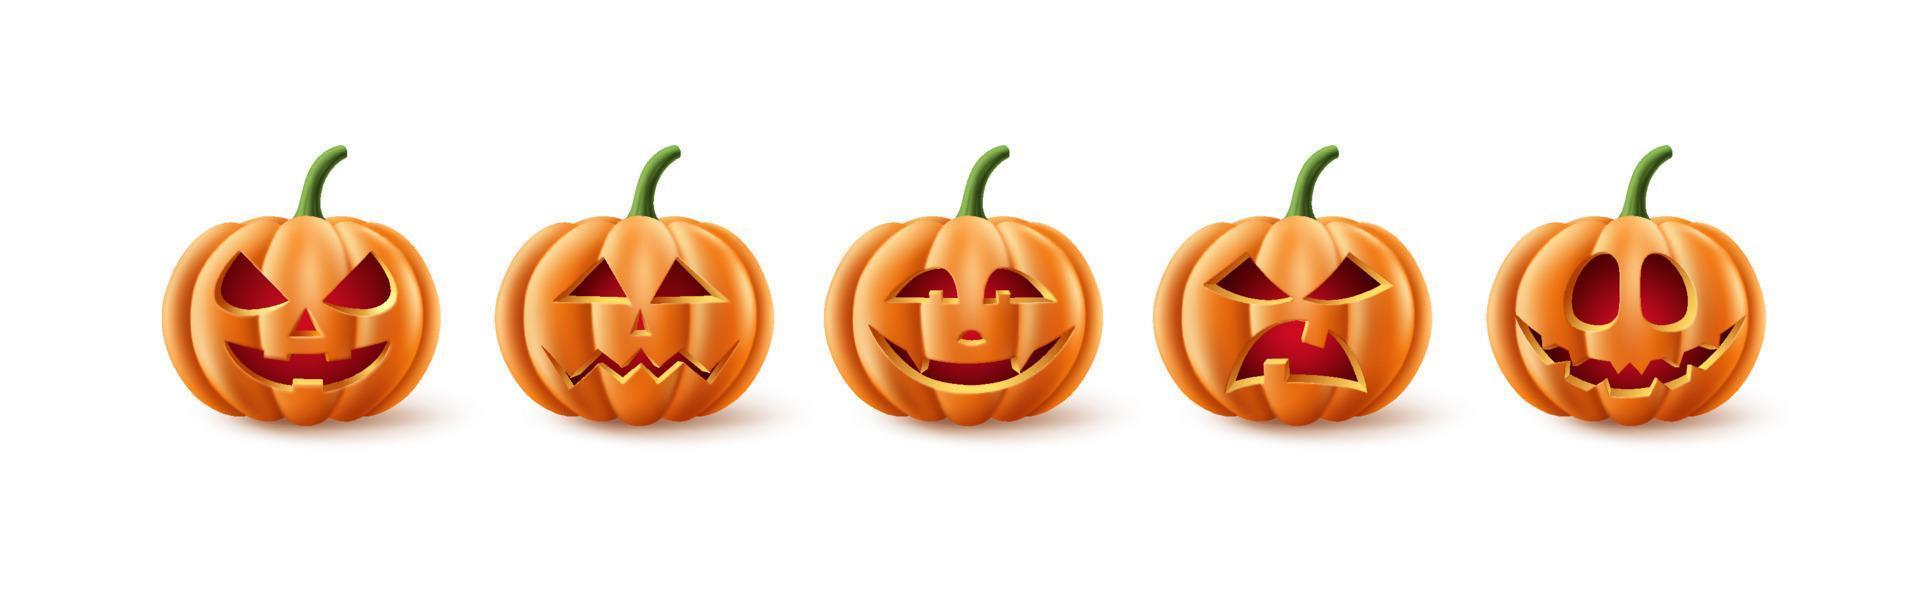 halloween pumpor vektor set. halloween pumpa element samling i kusligt, läskigt och läskigt med ansiktsuttryck för ikoner och dekorationer isolerade i vit bakgrund. vektor illustration.